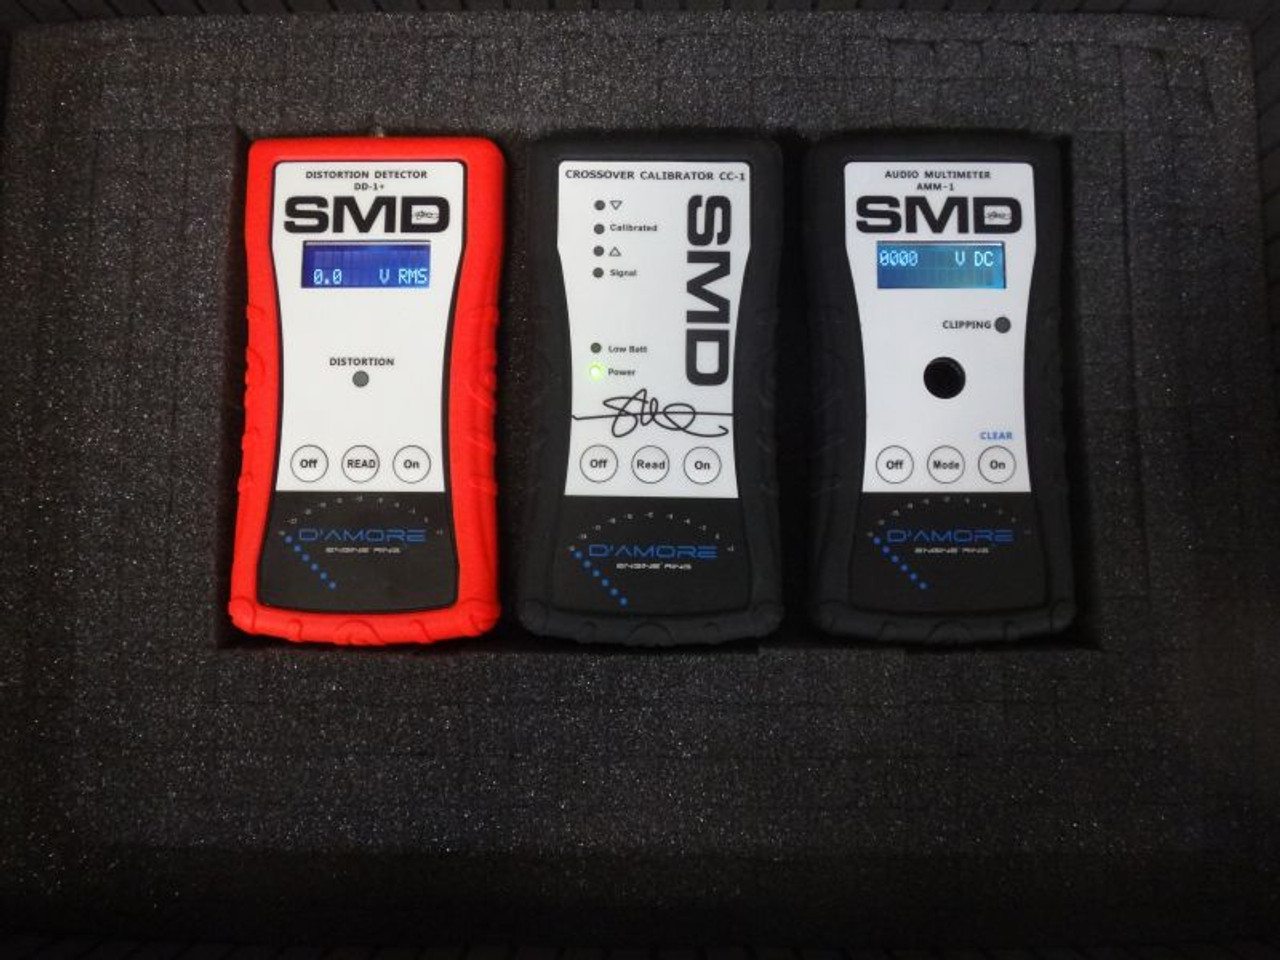 SMD IM-SG+ (Impedance Meter / Signal Generator PLUS)